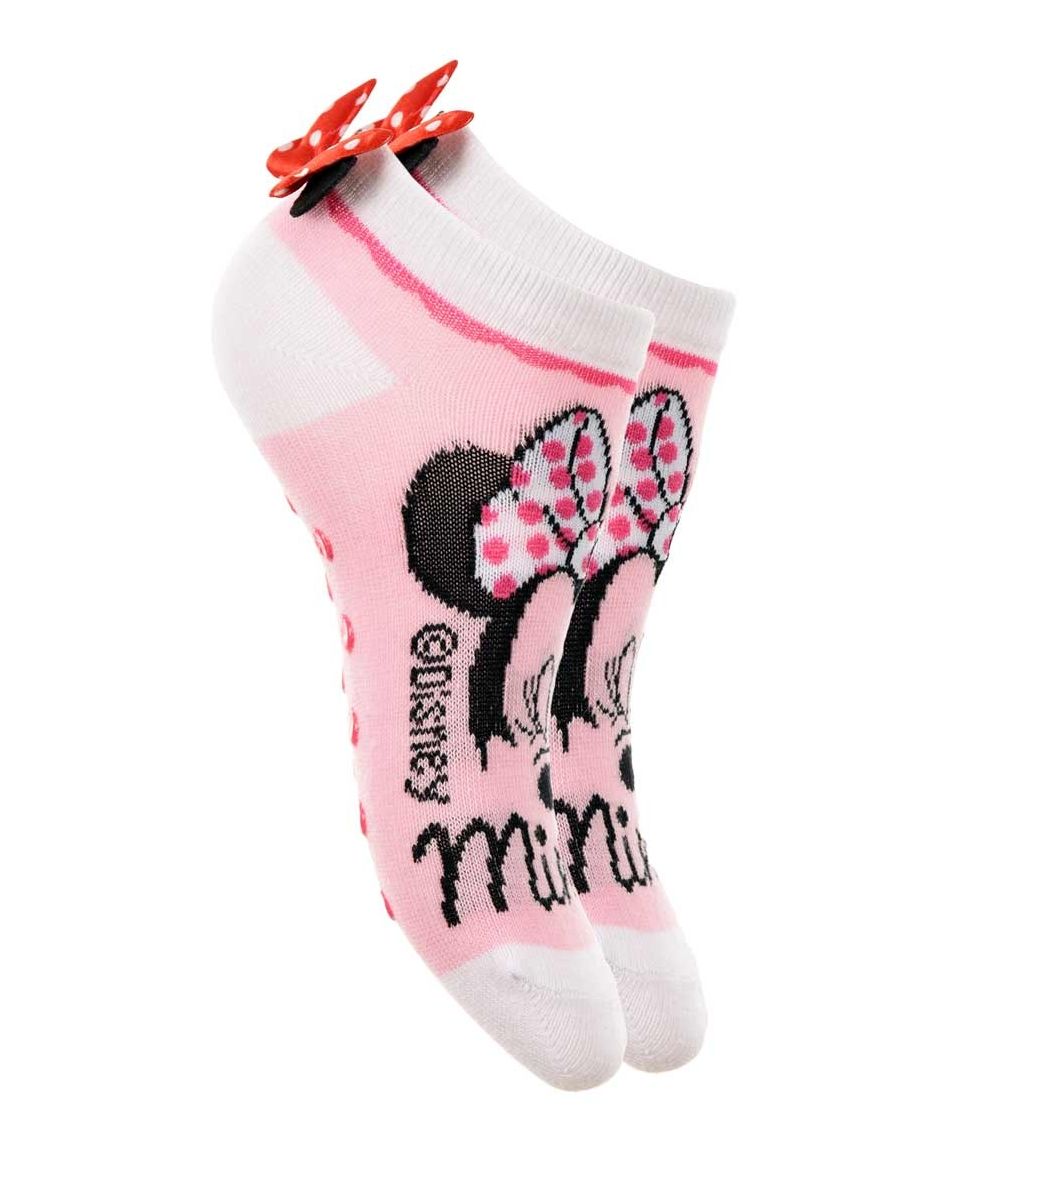 Girls socks Minnie